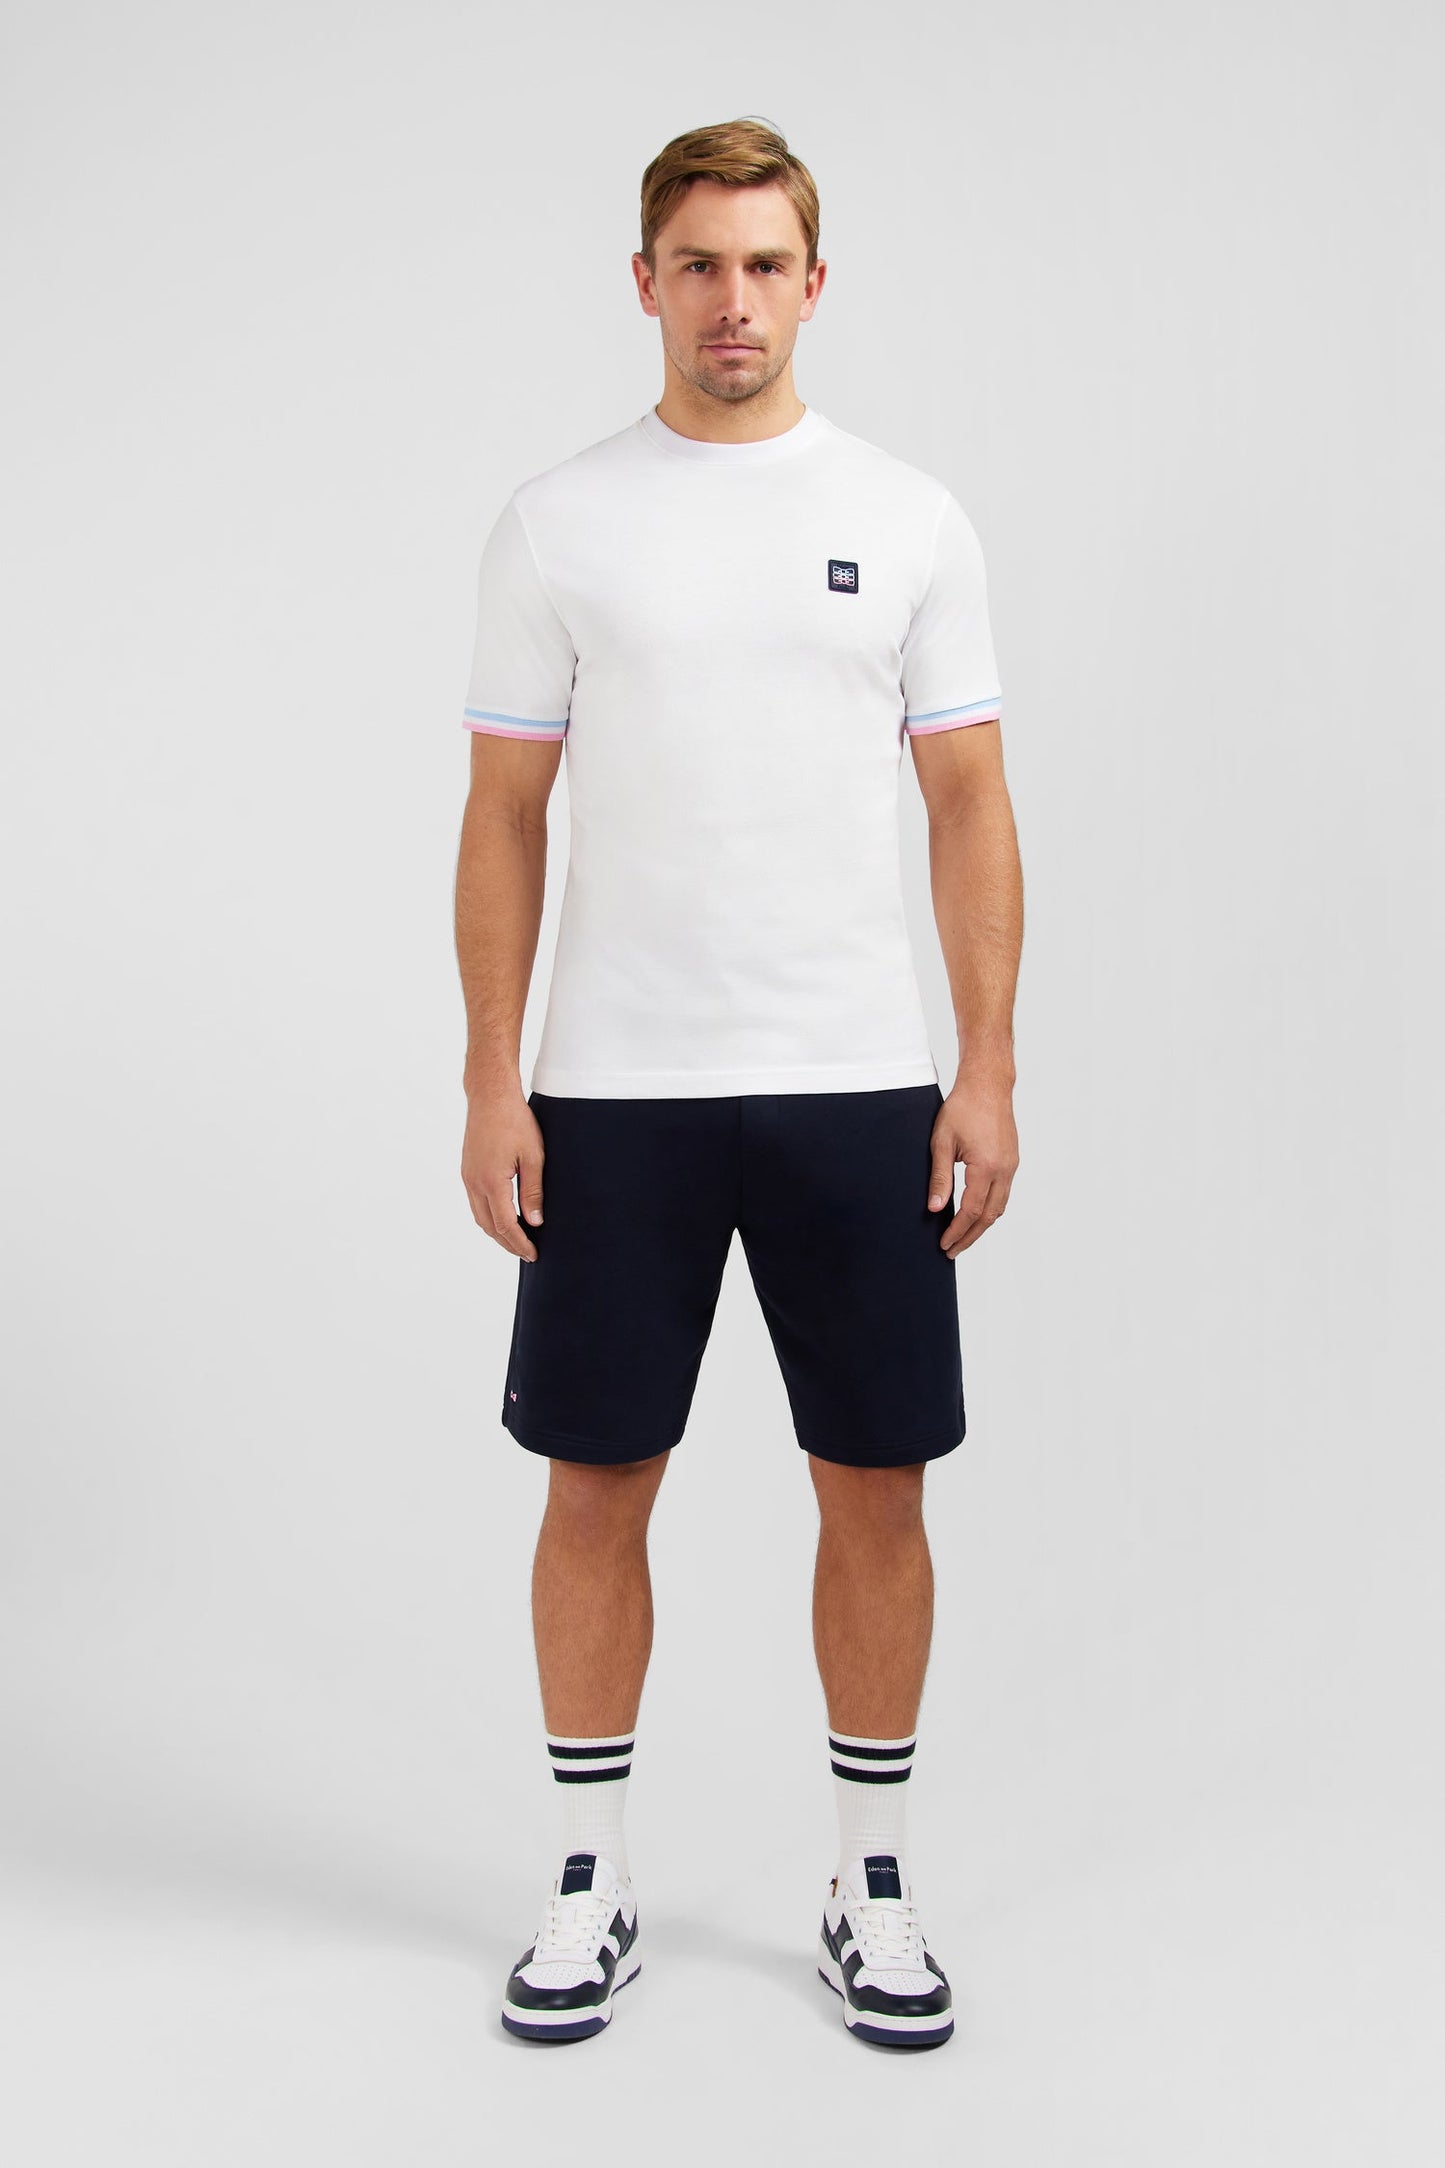 T-shirt manches courtes blanc avec logo reliefé - Image 1